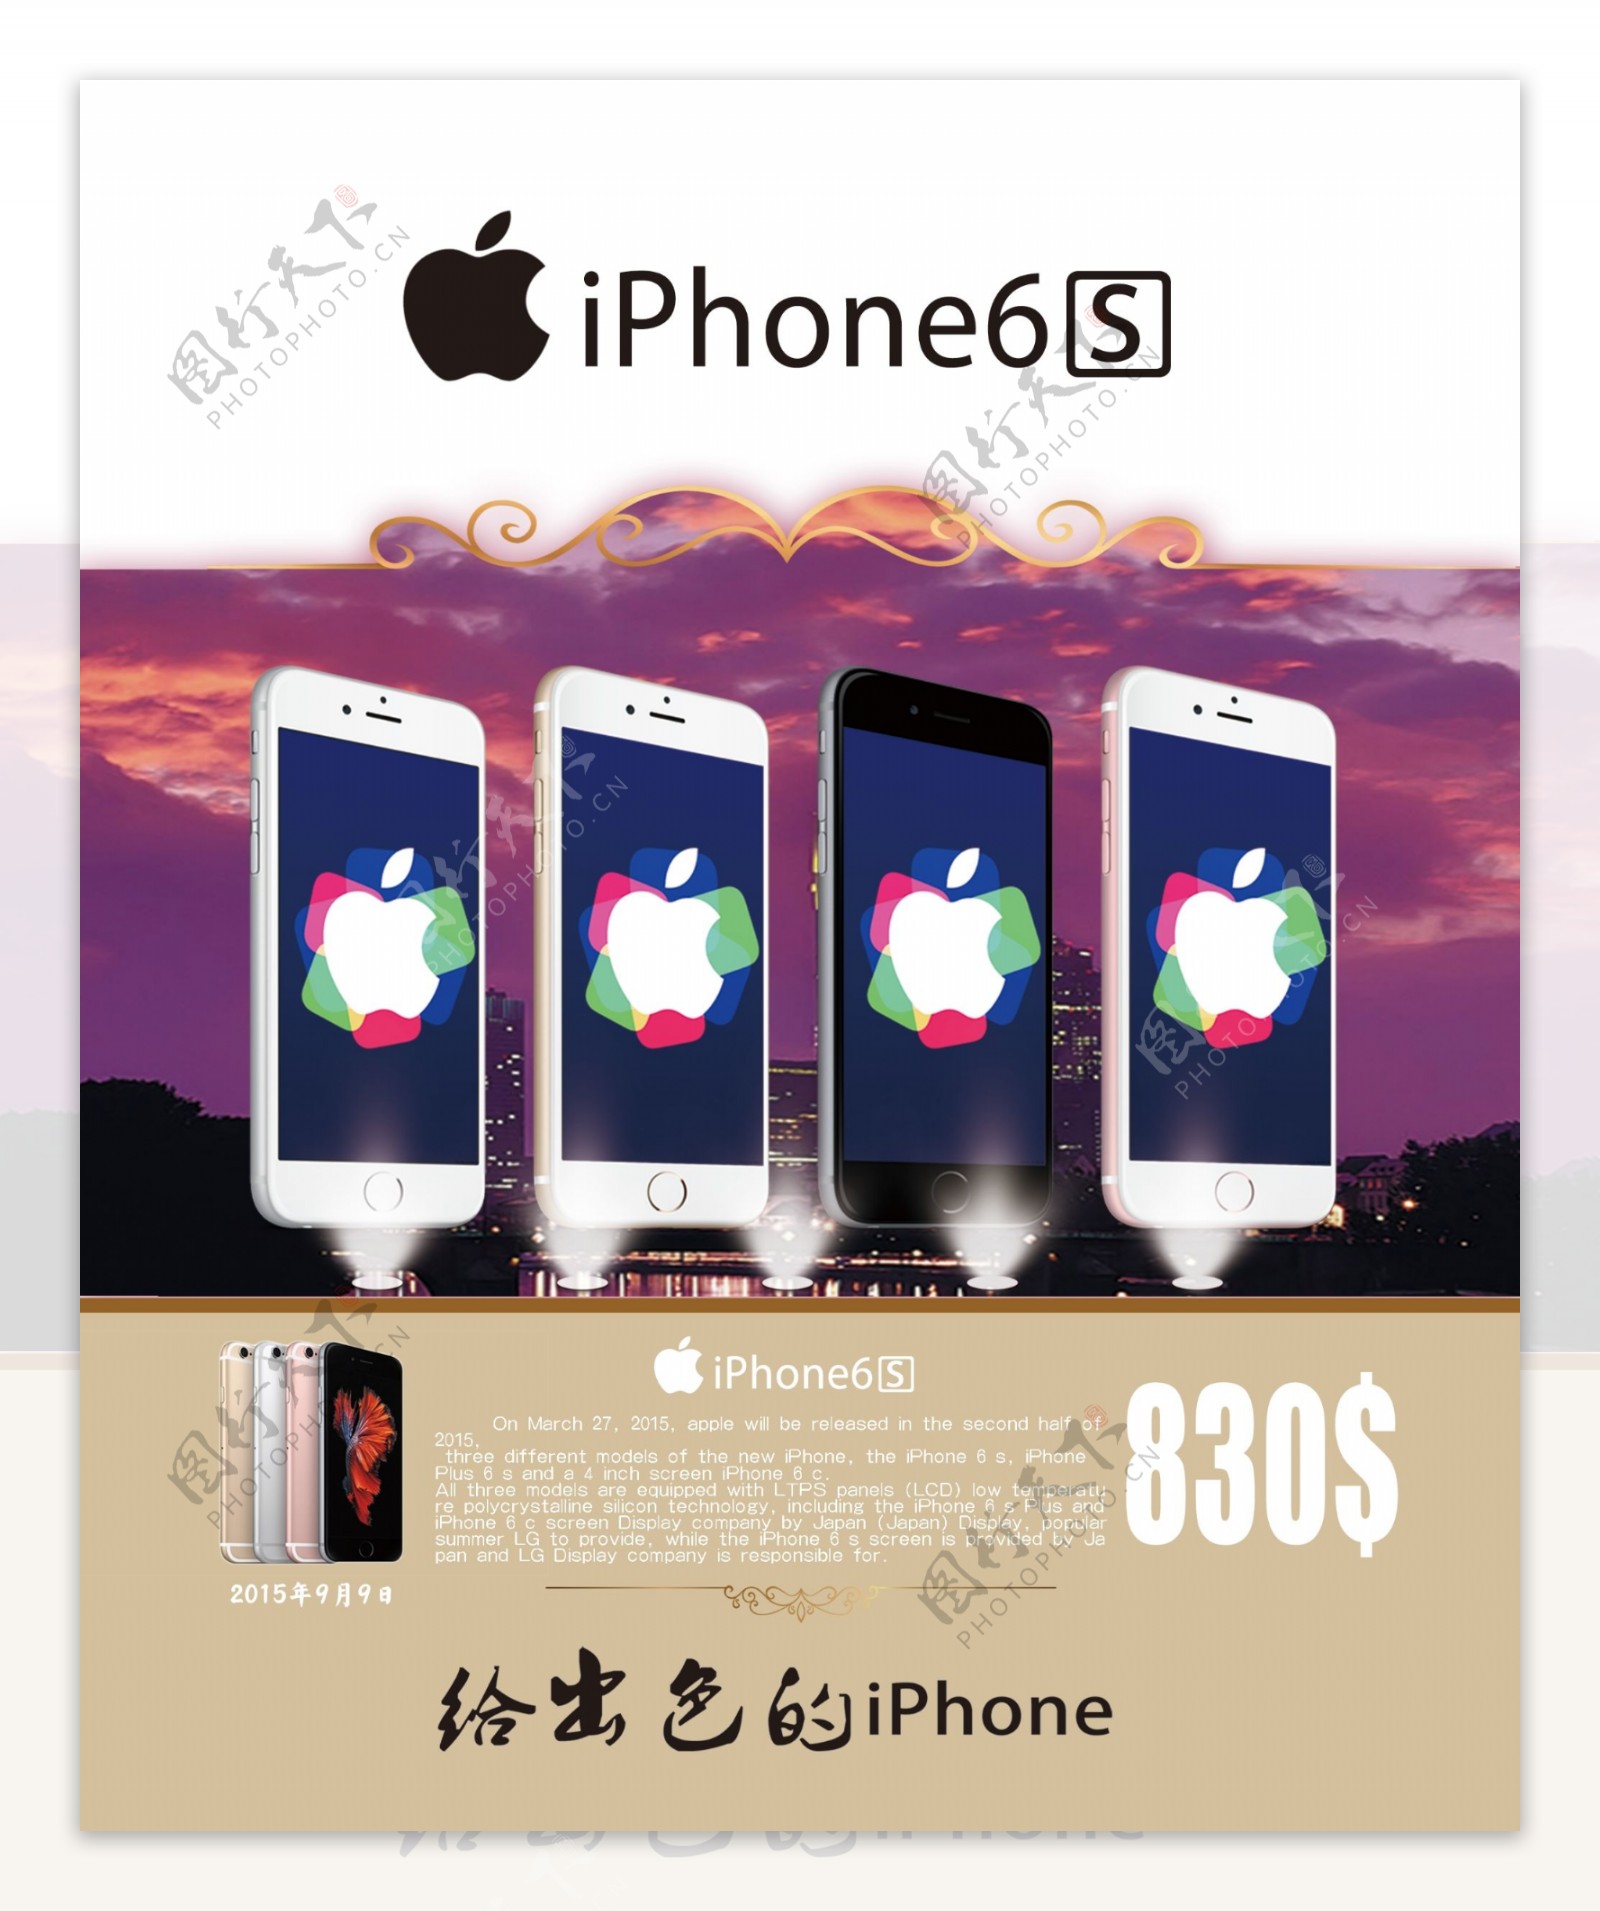 iphone6s宣传海报图片